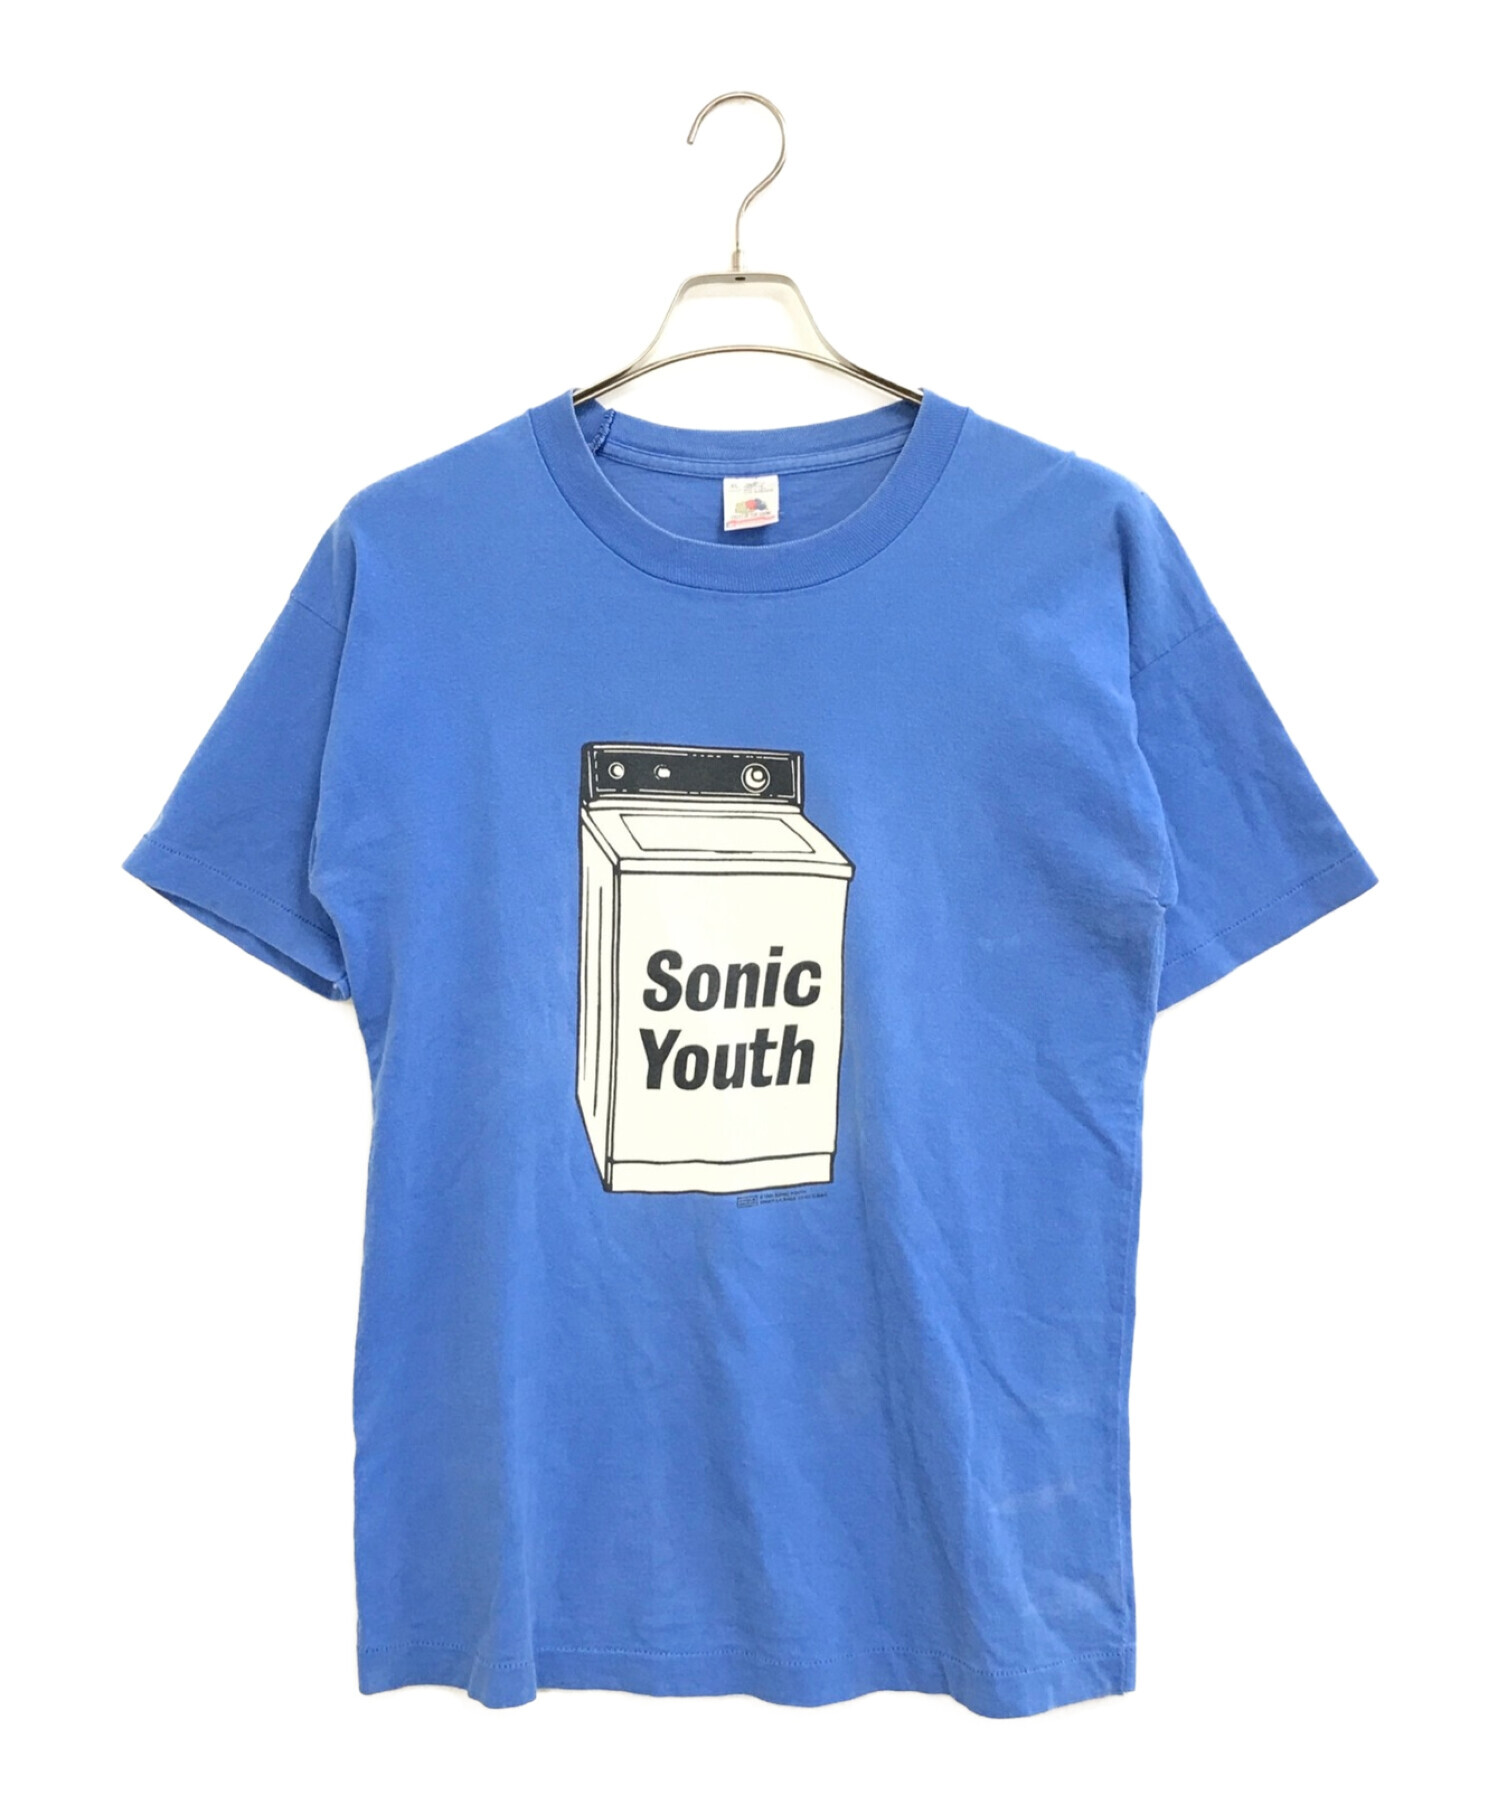 中古・古着通販】バンドTシャツ (バンドTシャツ) Sonic Youth(ソニック